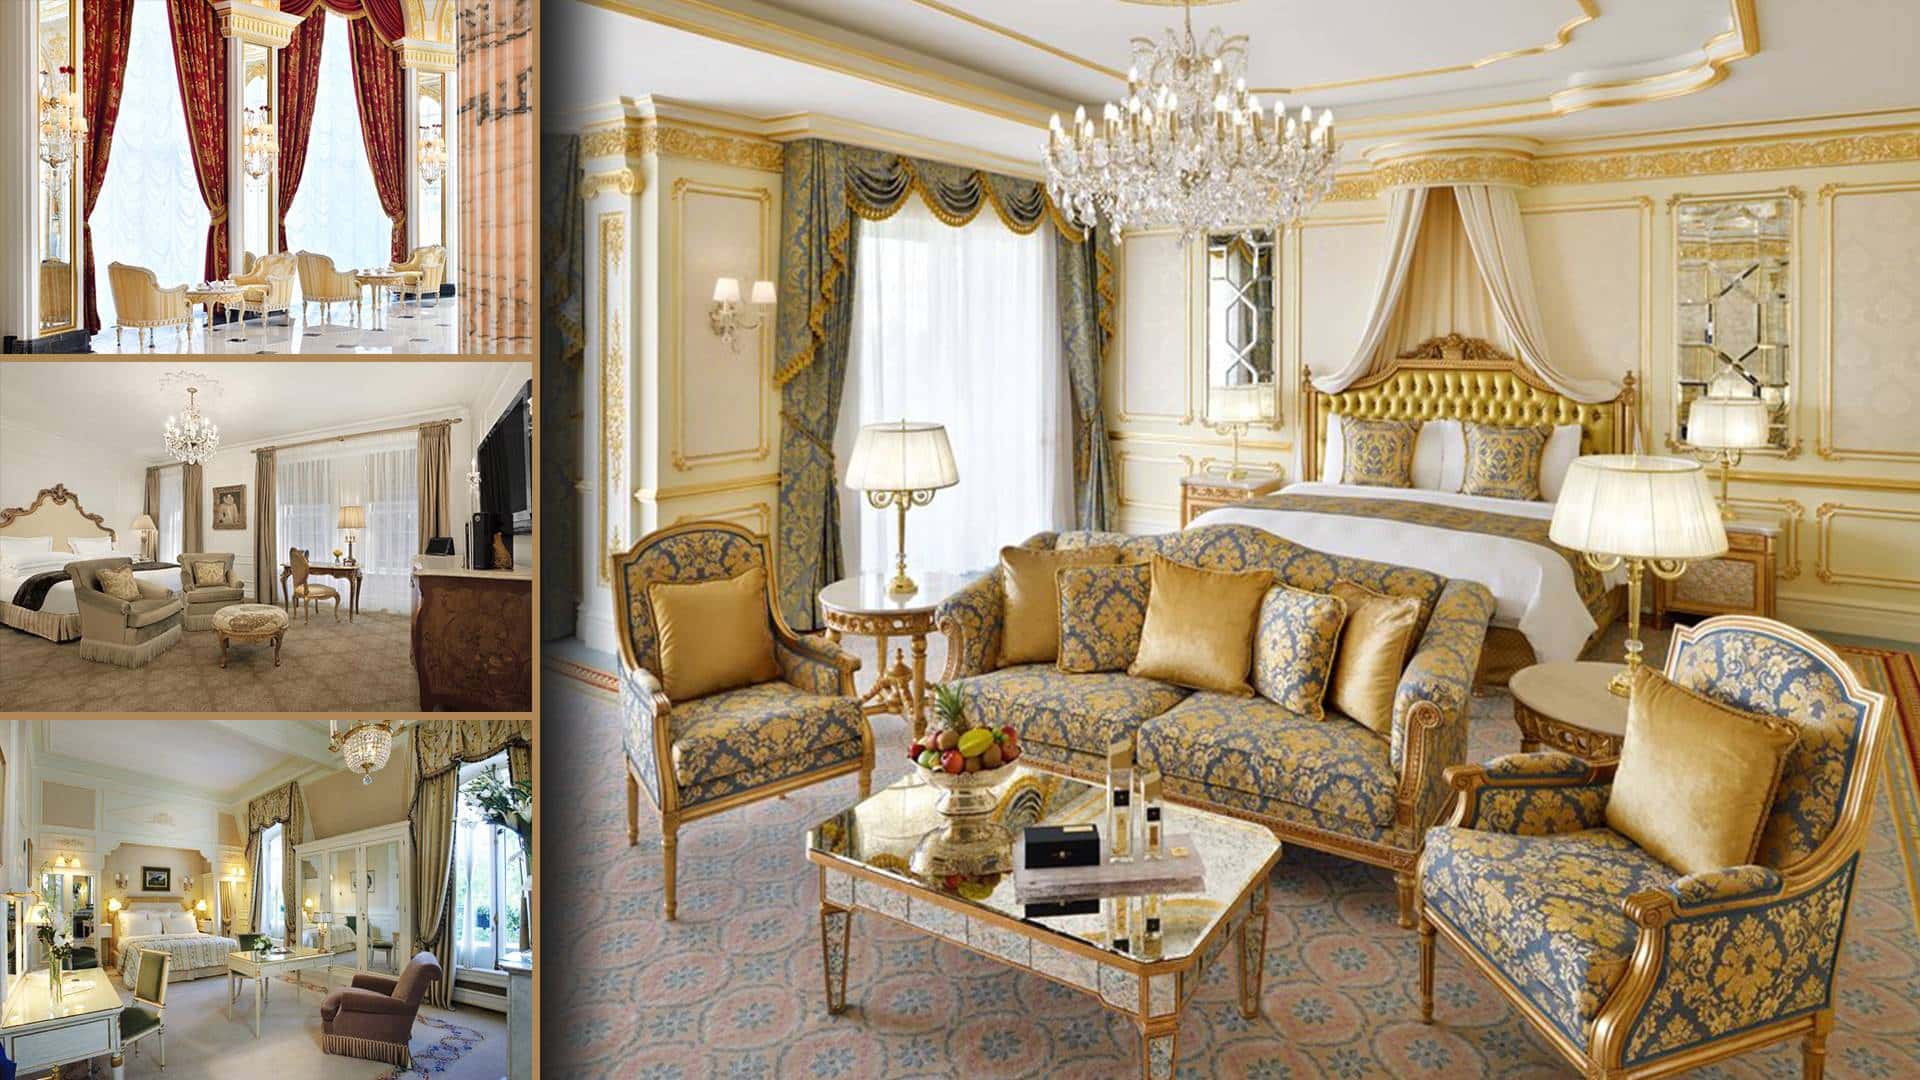 hotely výběr nábytku design interiérů služby poradenství luxusní klasika klasick apartmá královská tradiční viktoriánská barokní rokoko hotelové pokoje